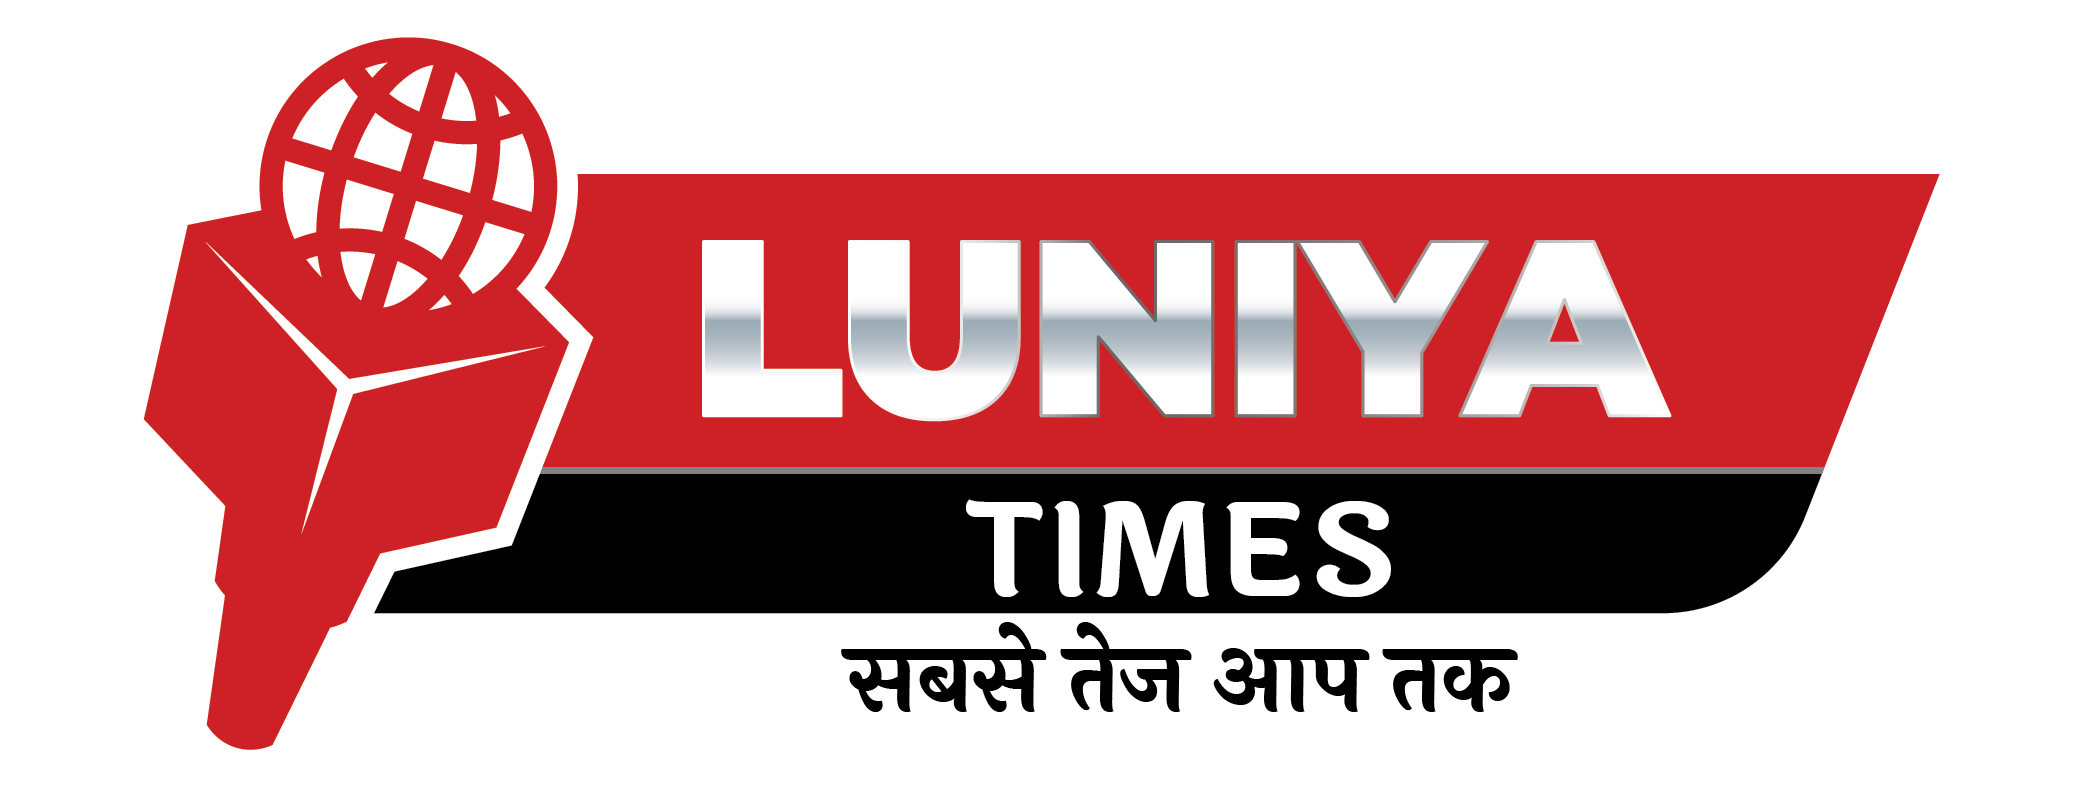 Luniya Times News